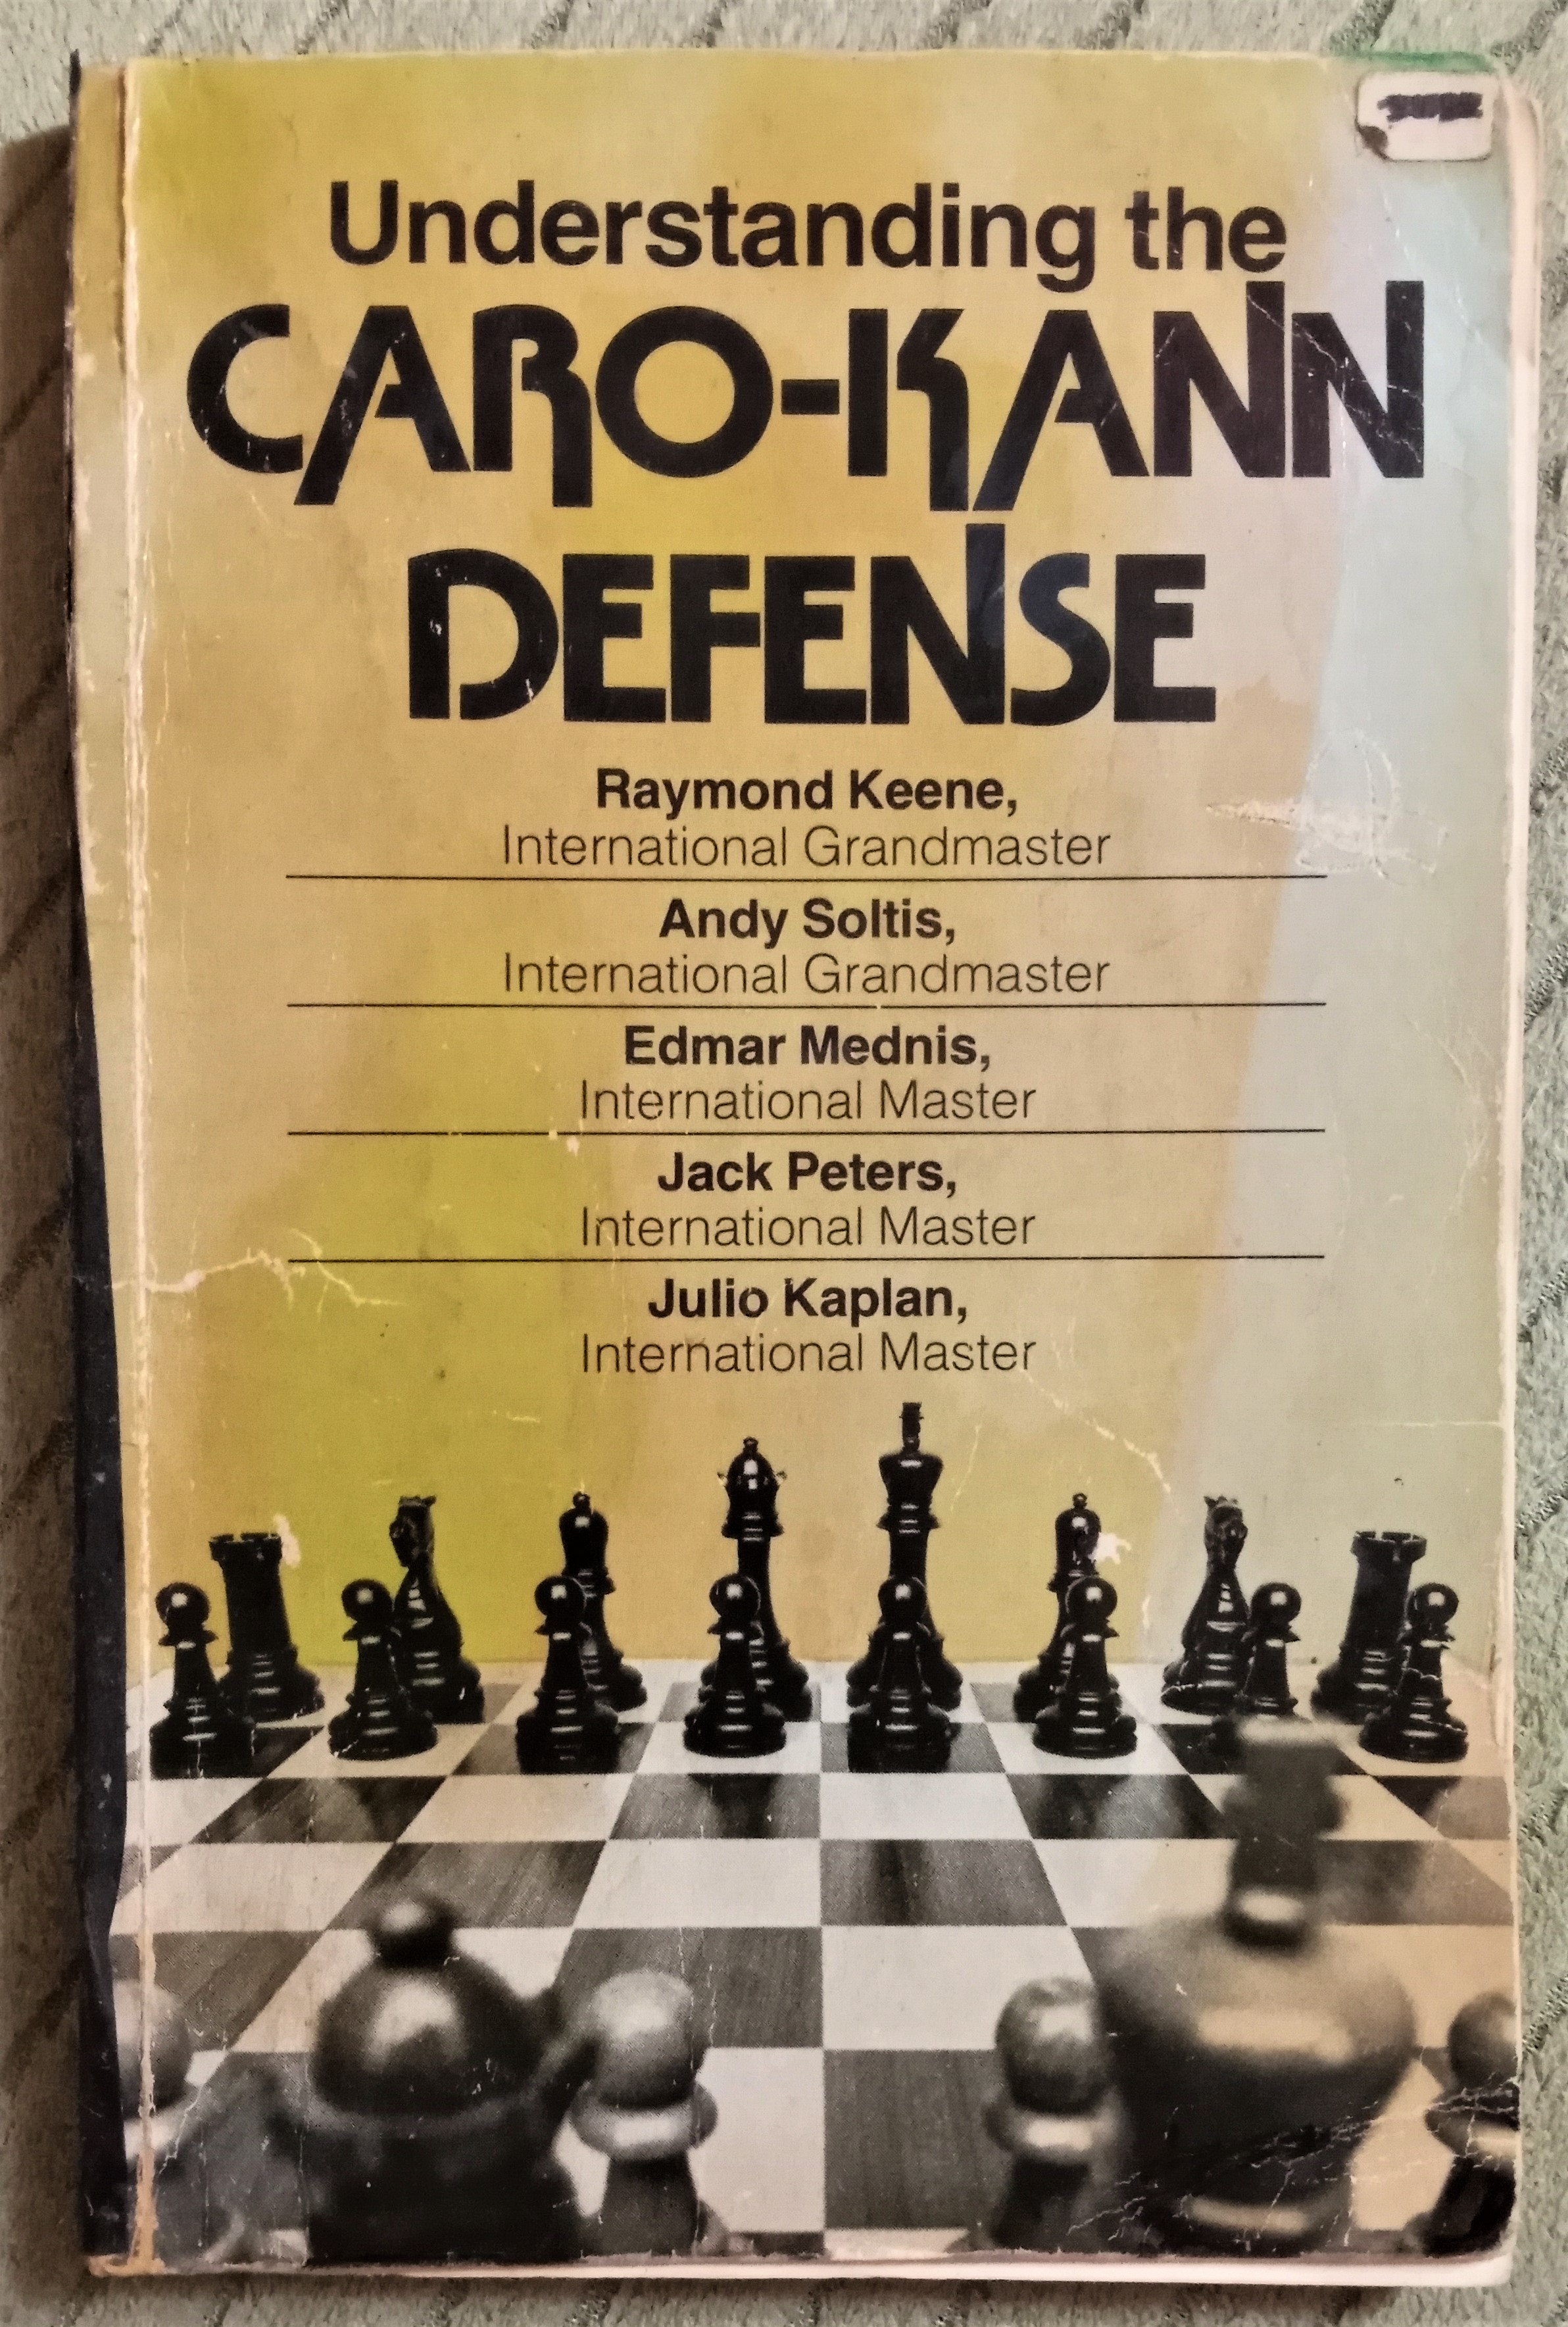 Chess Openings: Caro Kann 